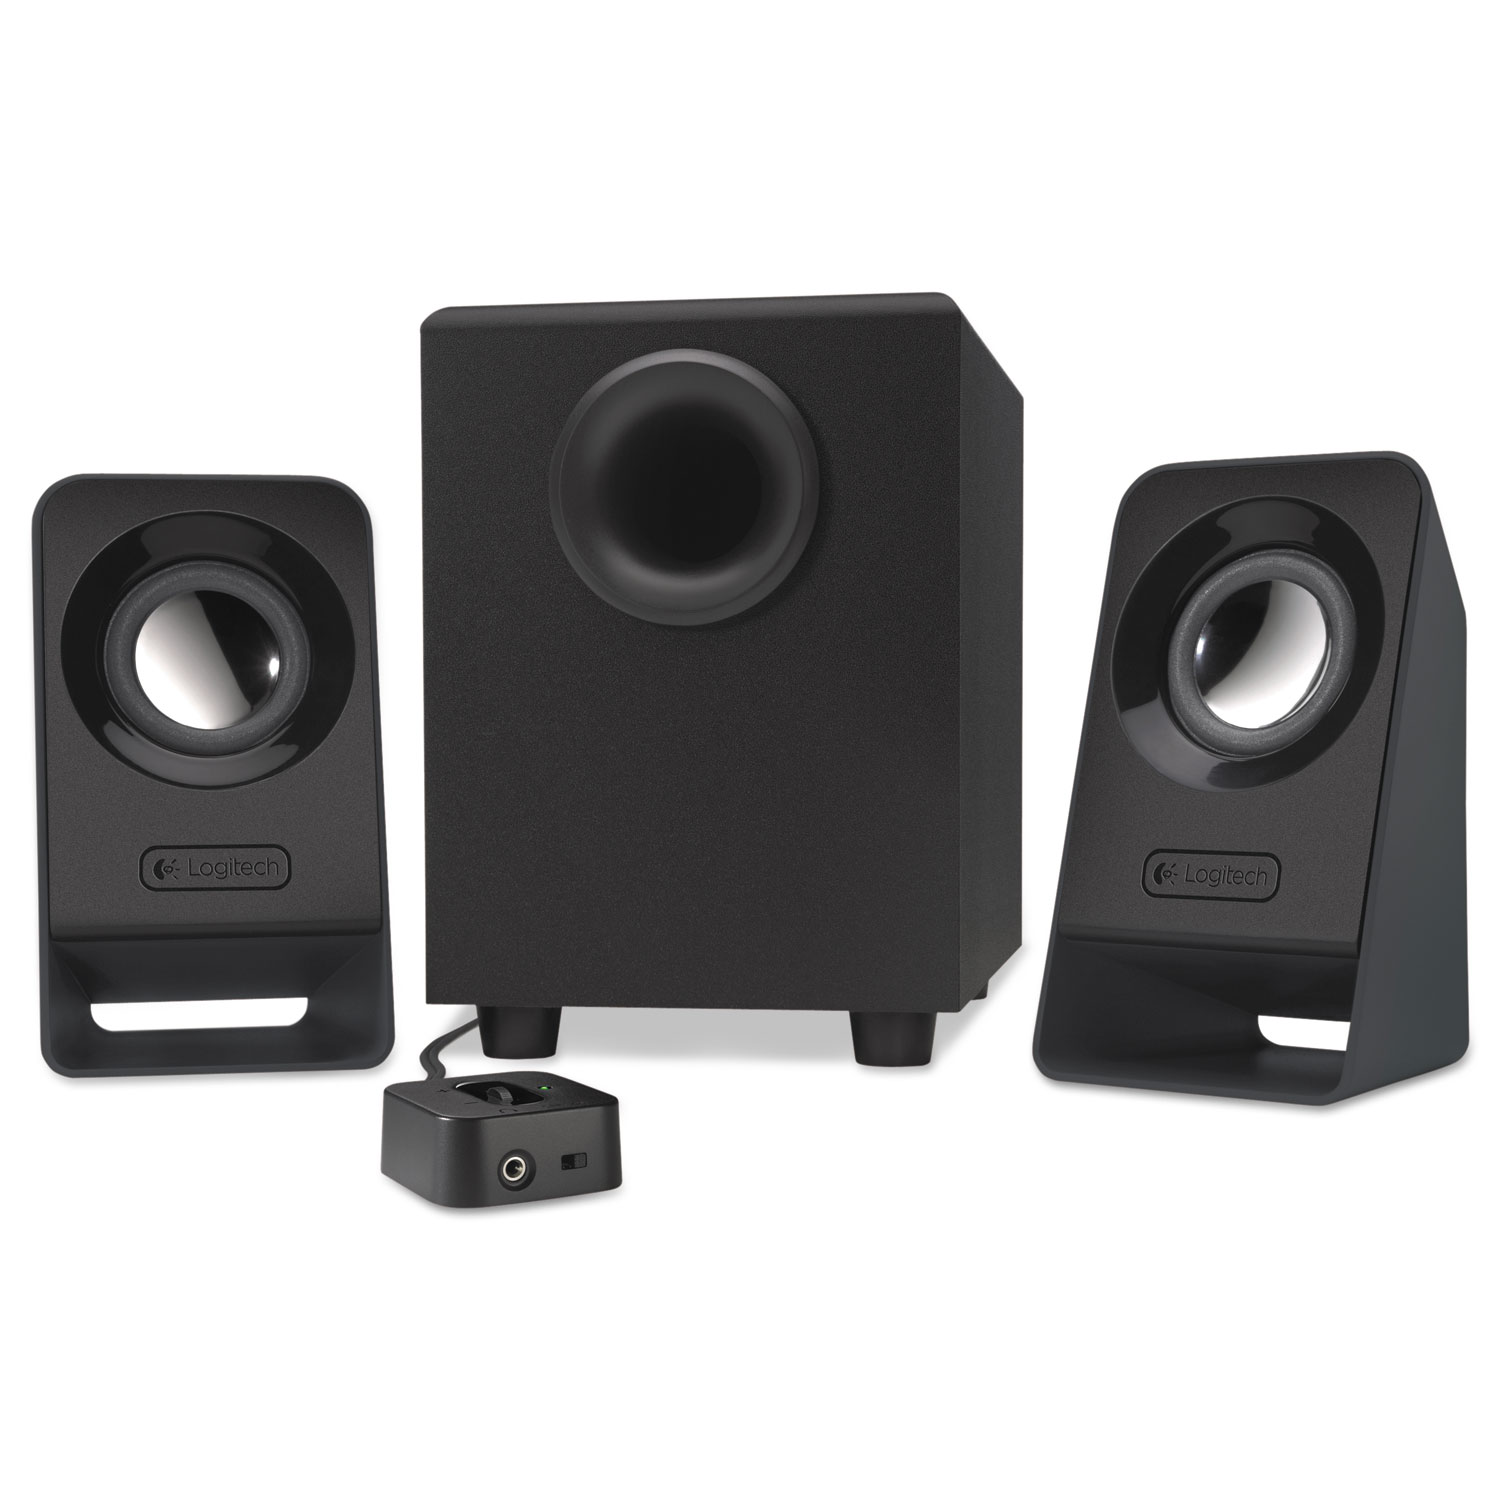 Z213 Multimedia Speakers, Black